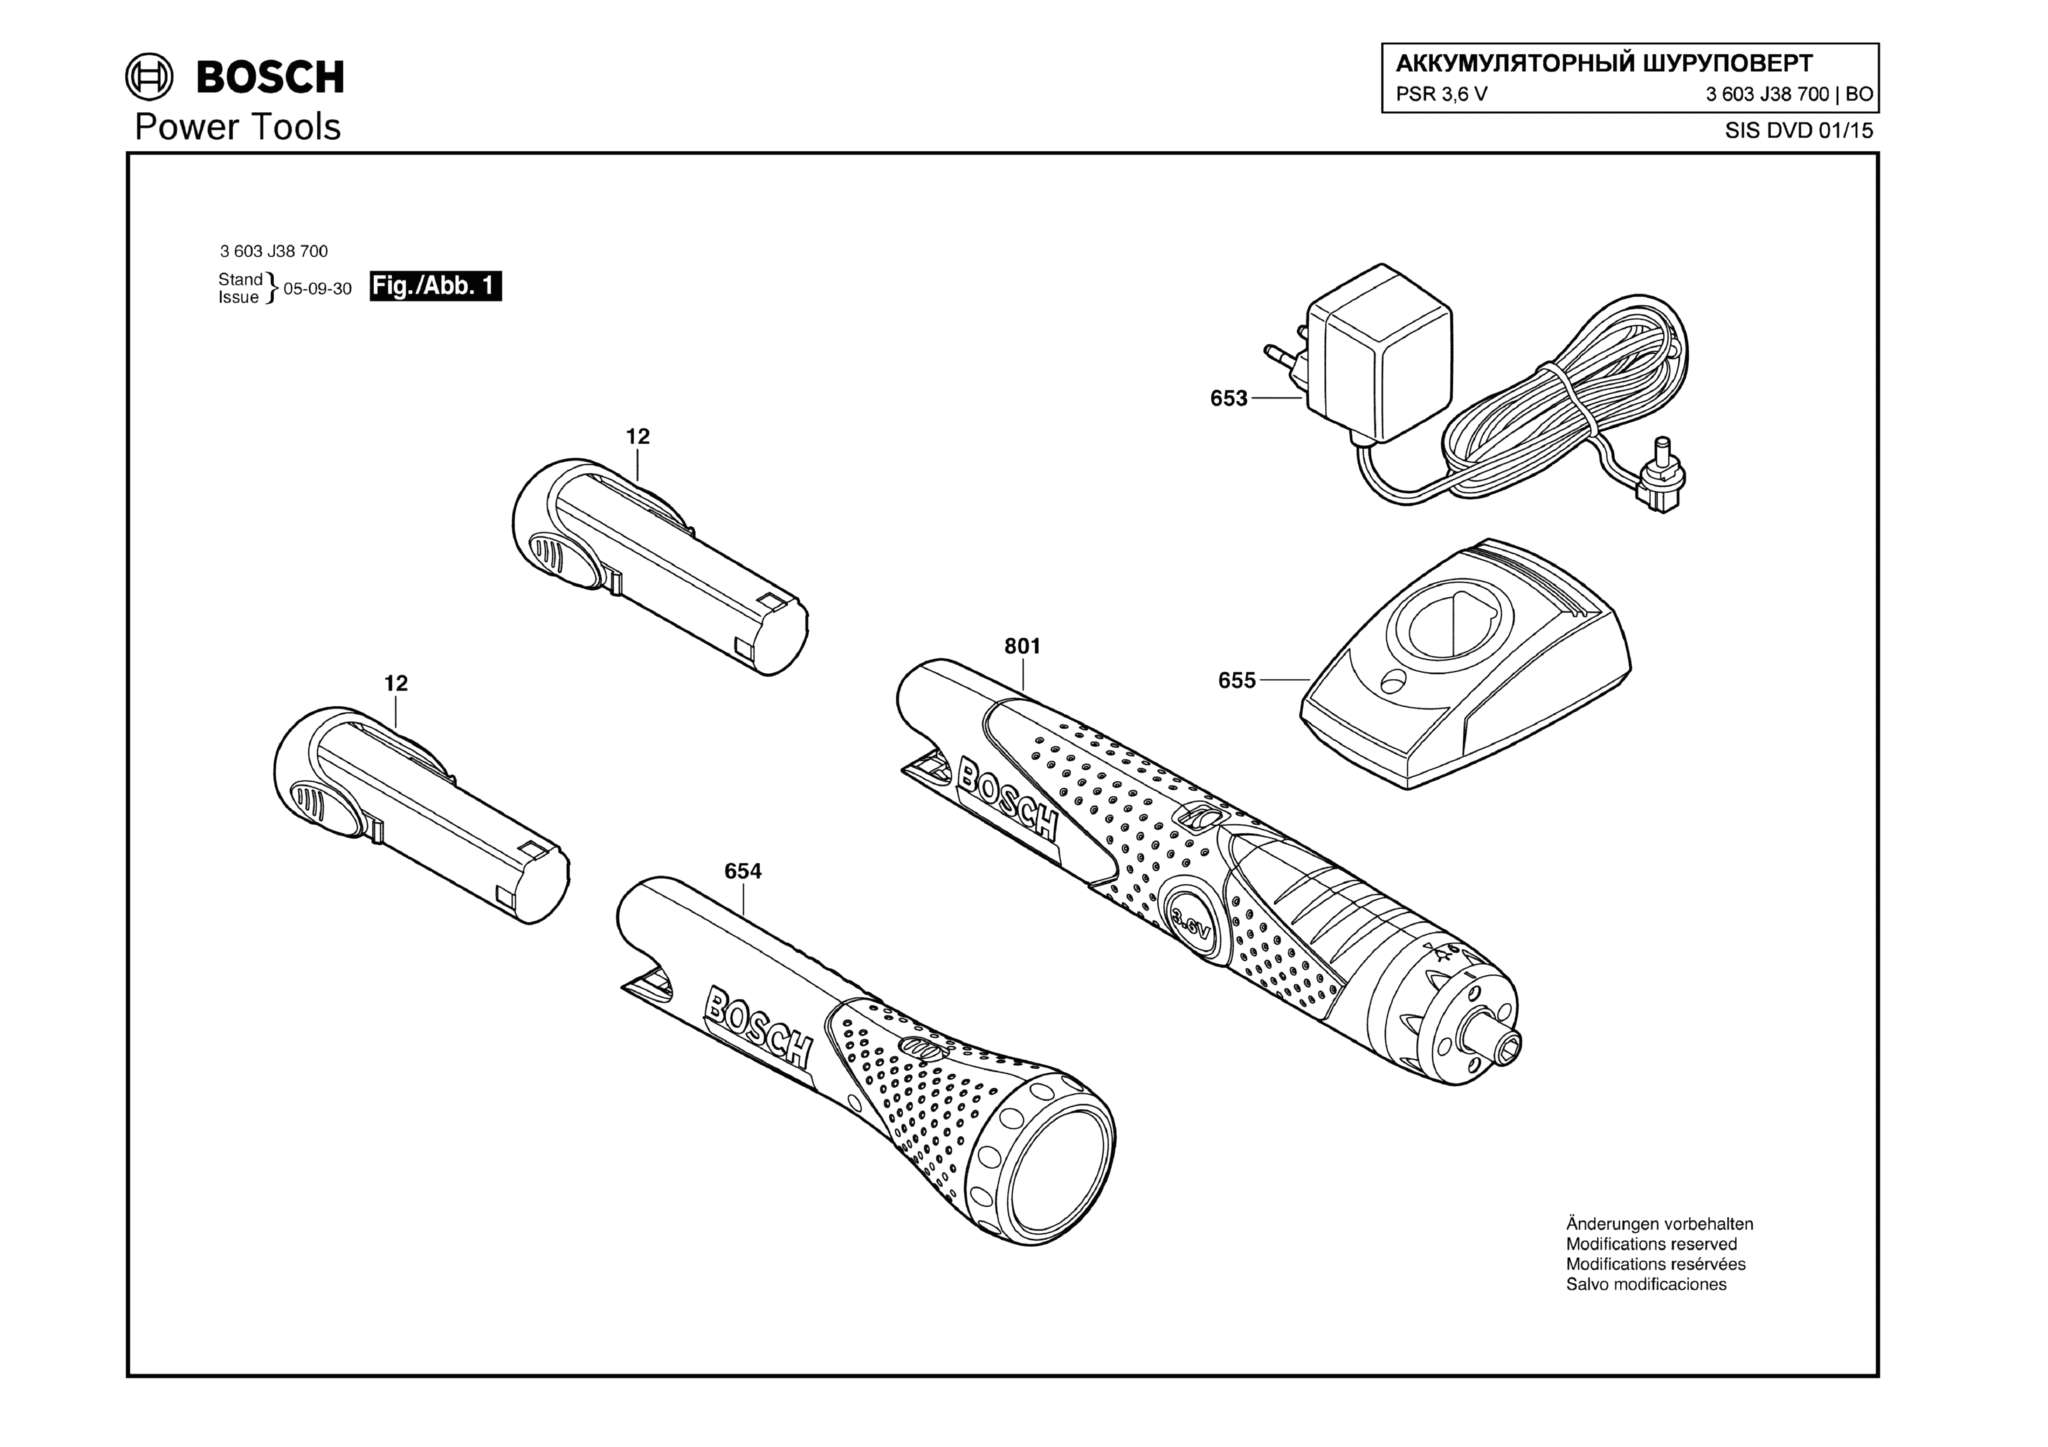 Запчасти, схема и деталировка Bosch PSR 3,6 V (ТИП 3603J38700)